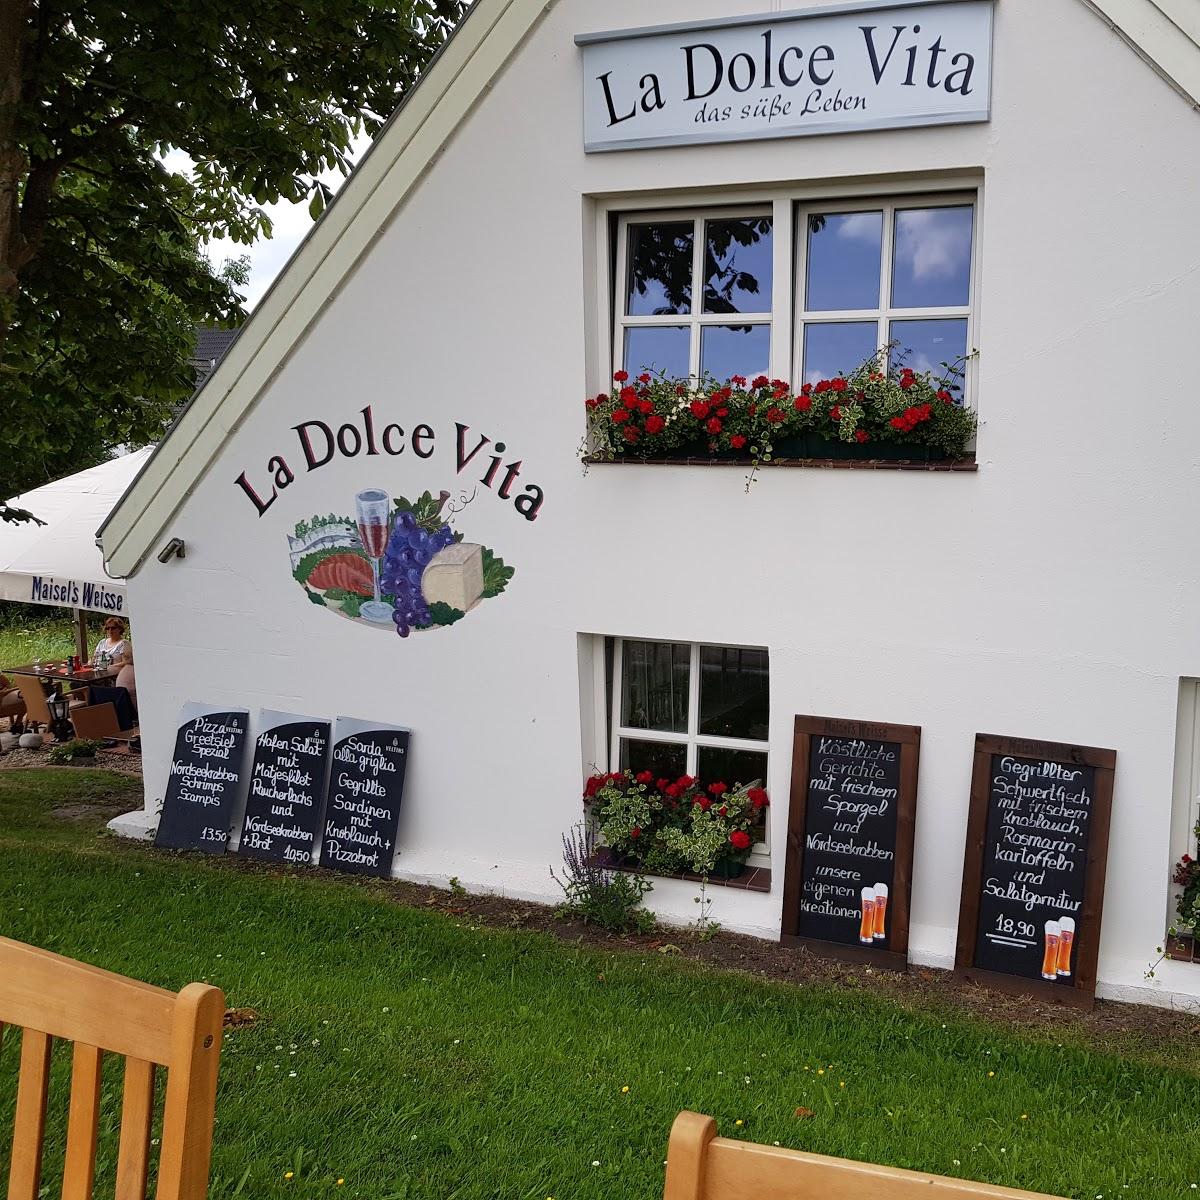 Restaurant "La Dolce Vita" in Krummhörn